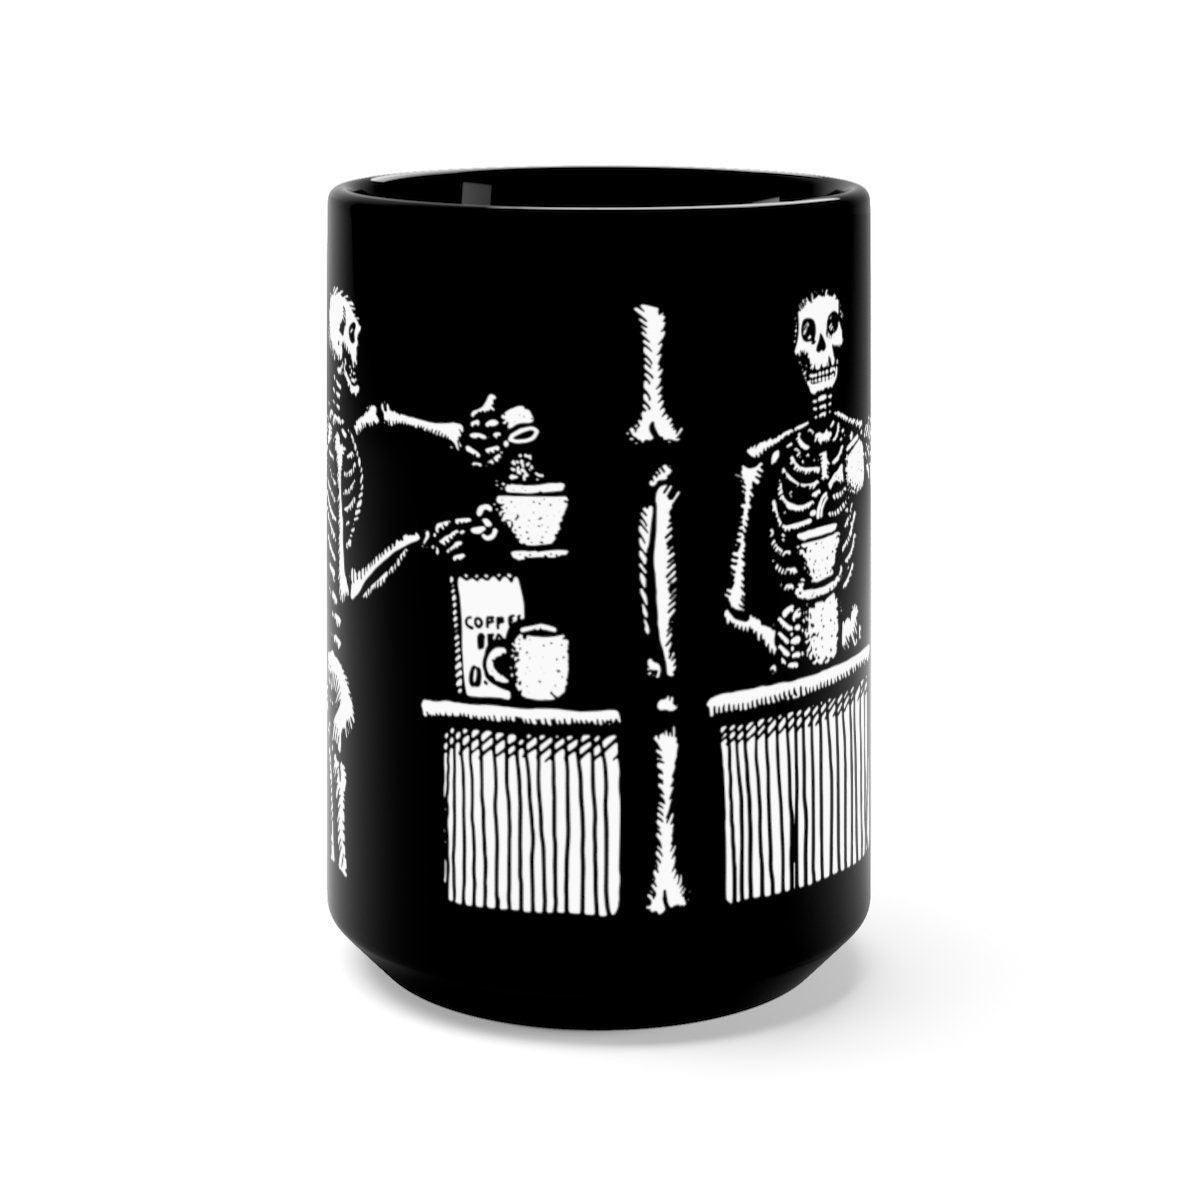 BellavanceInk: Coffee Mug With Pen & Ink Drawing Of Skeleton Making A Cup Of Coffee In 4 Stages - BellavanceInk